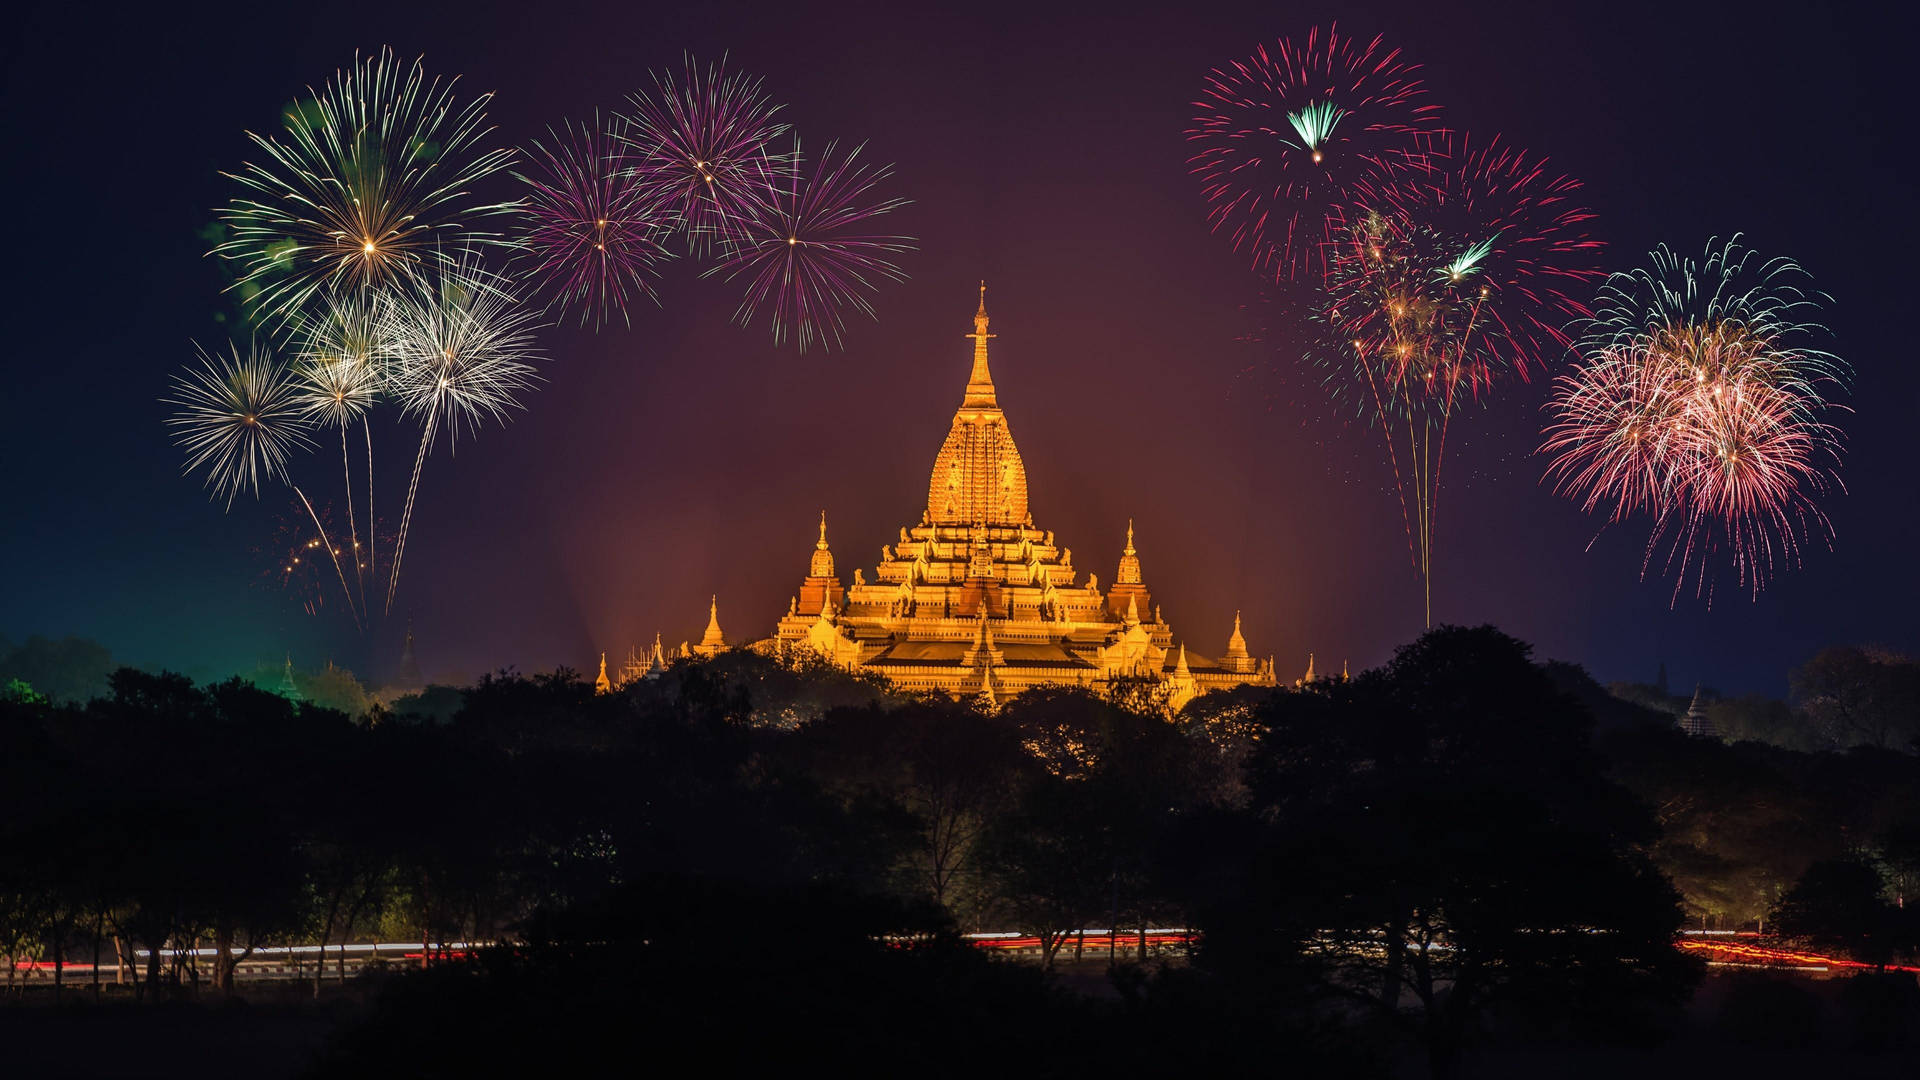 Burma Pagoda Fireworks